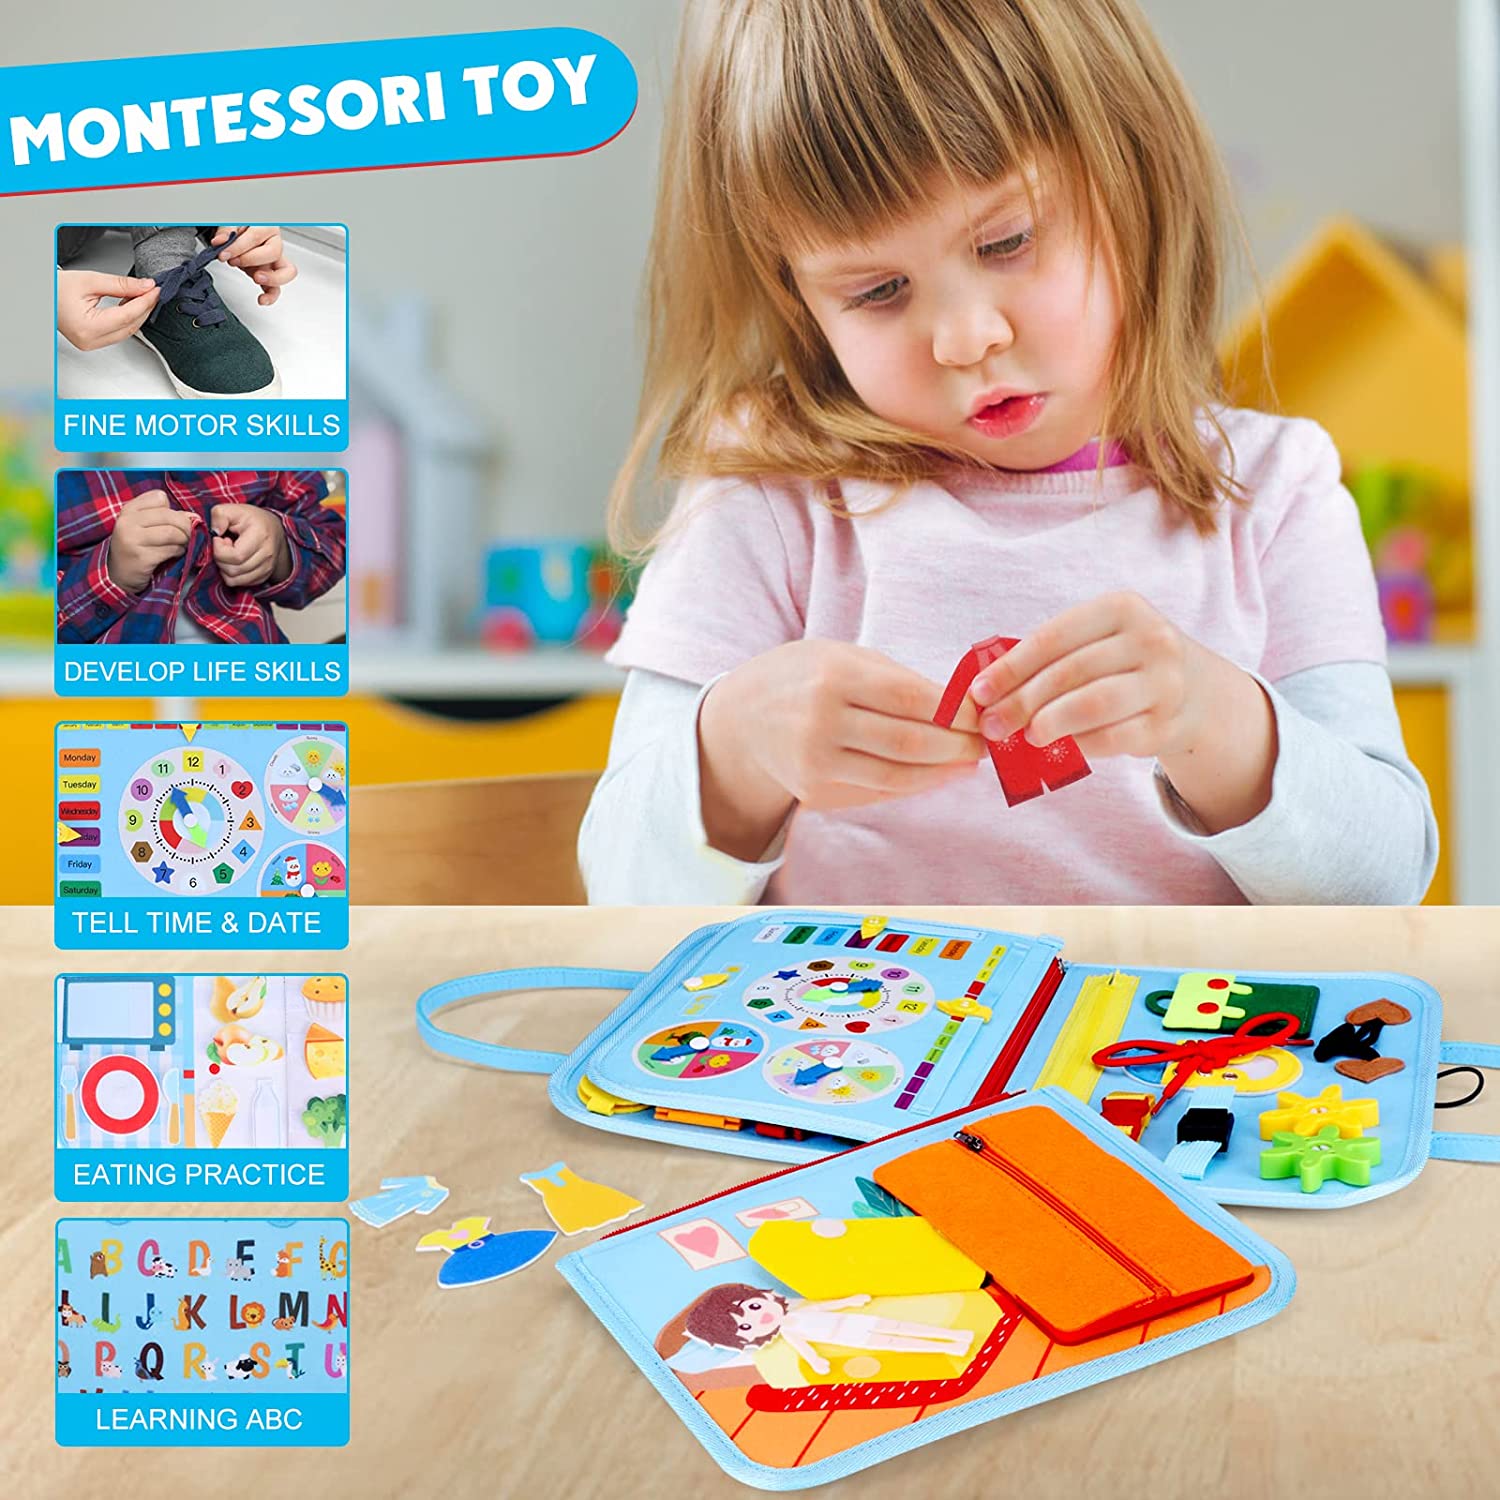 Montessori Busy Board Crianças Viagem Toy Toy Pré-escolar aprendendo brinquedo sensorial educacional para meninos de 1 a 6 anos de idade menina autista